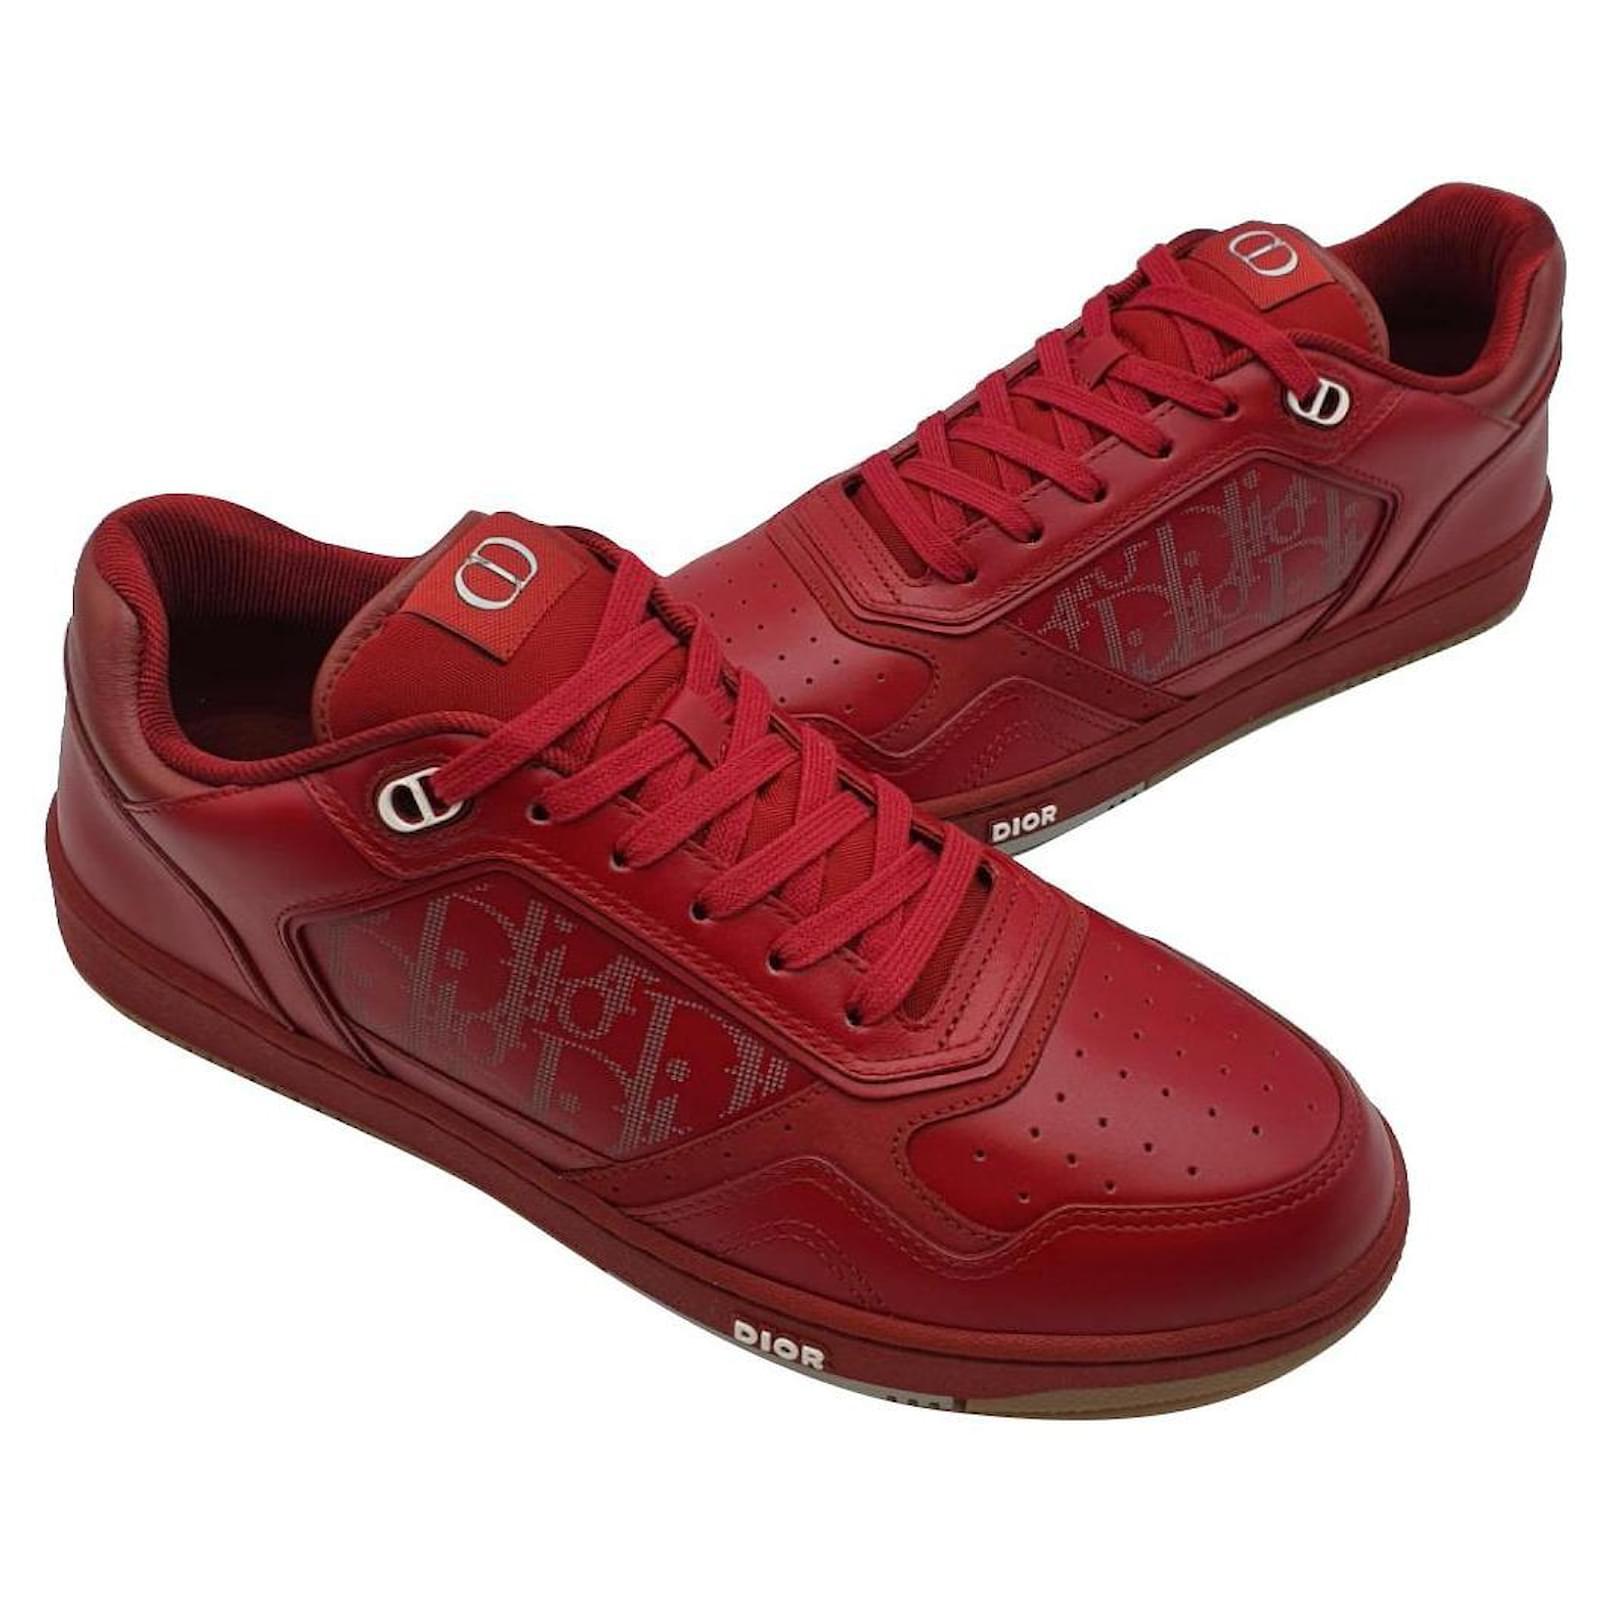 Giày Dior Nữ siêu cấp Oblique LowWalknDior họa tiết màu đỏ